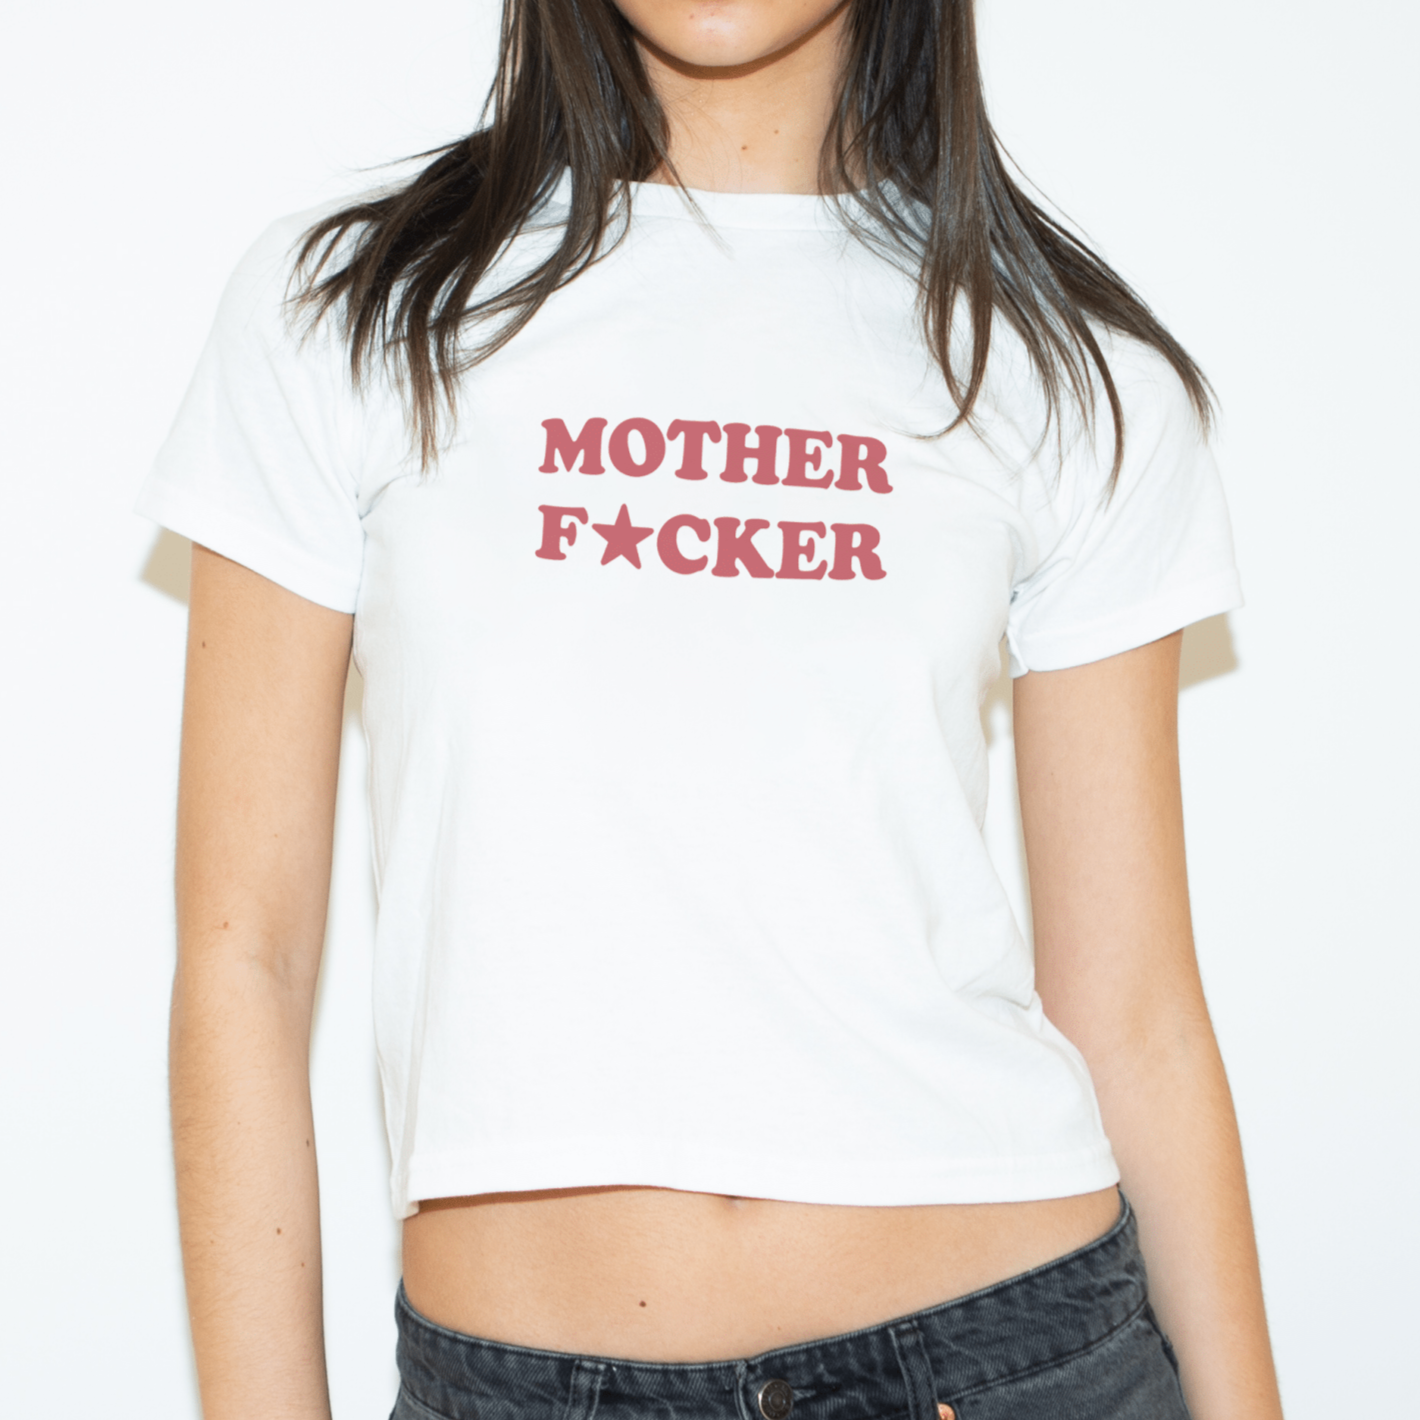 'Mother F★cker' baby tee - In Print We Trust